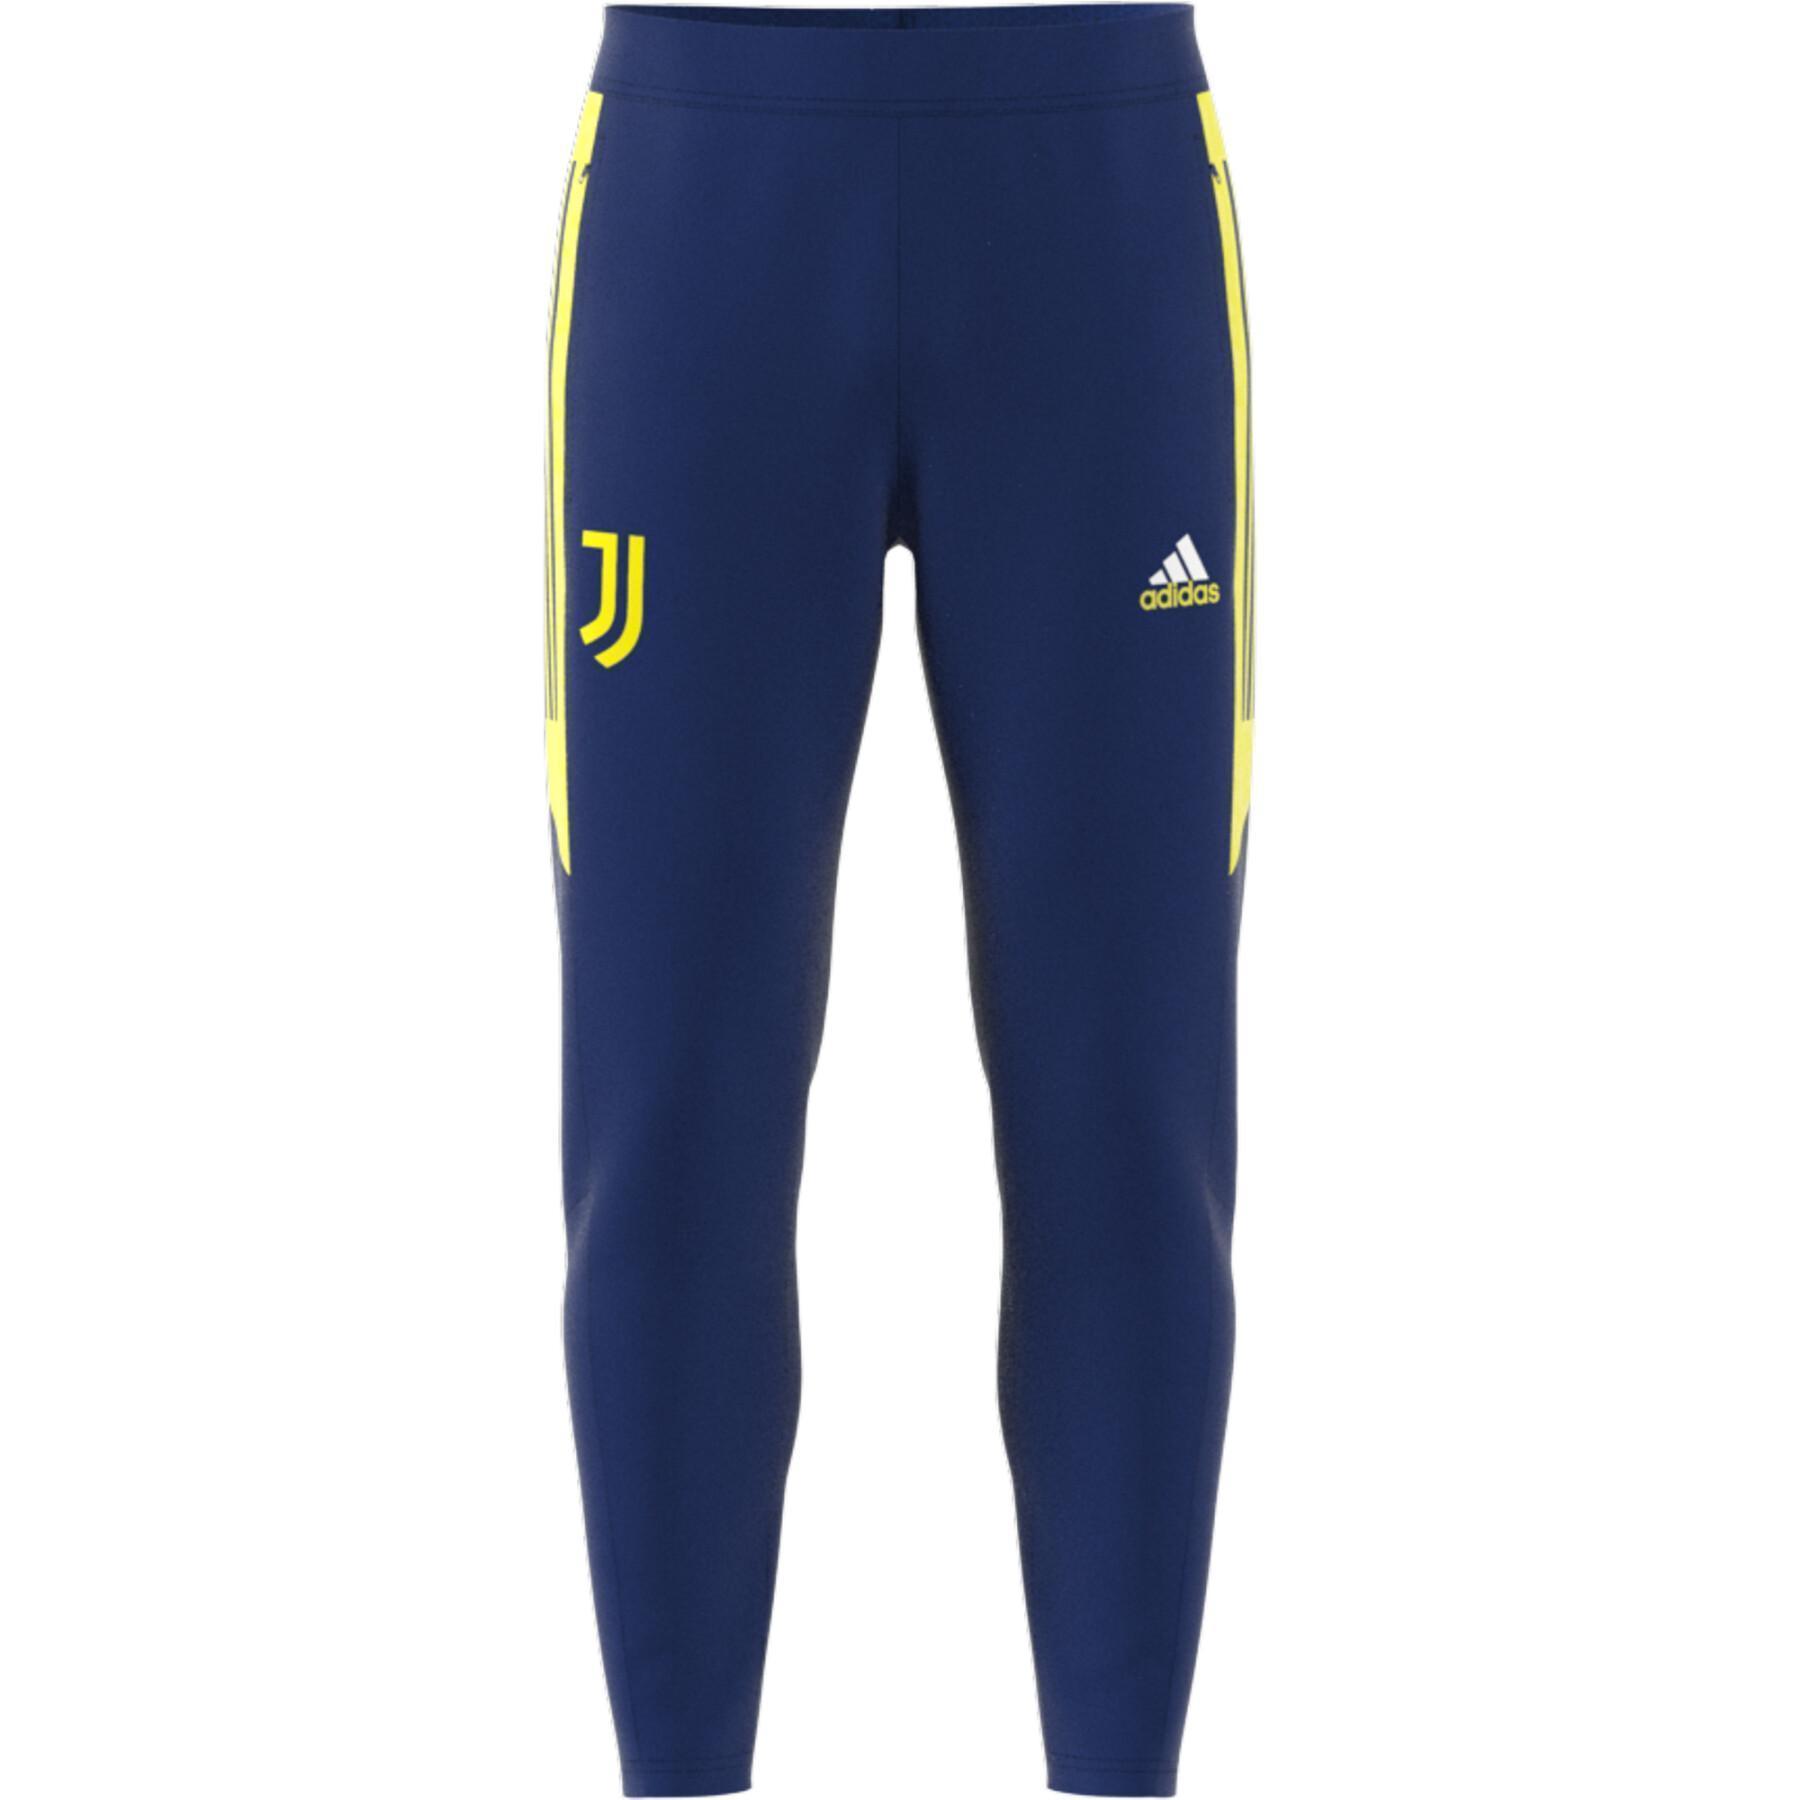 Training pants Juventus Turin Condivo Slim 2021/22